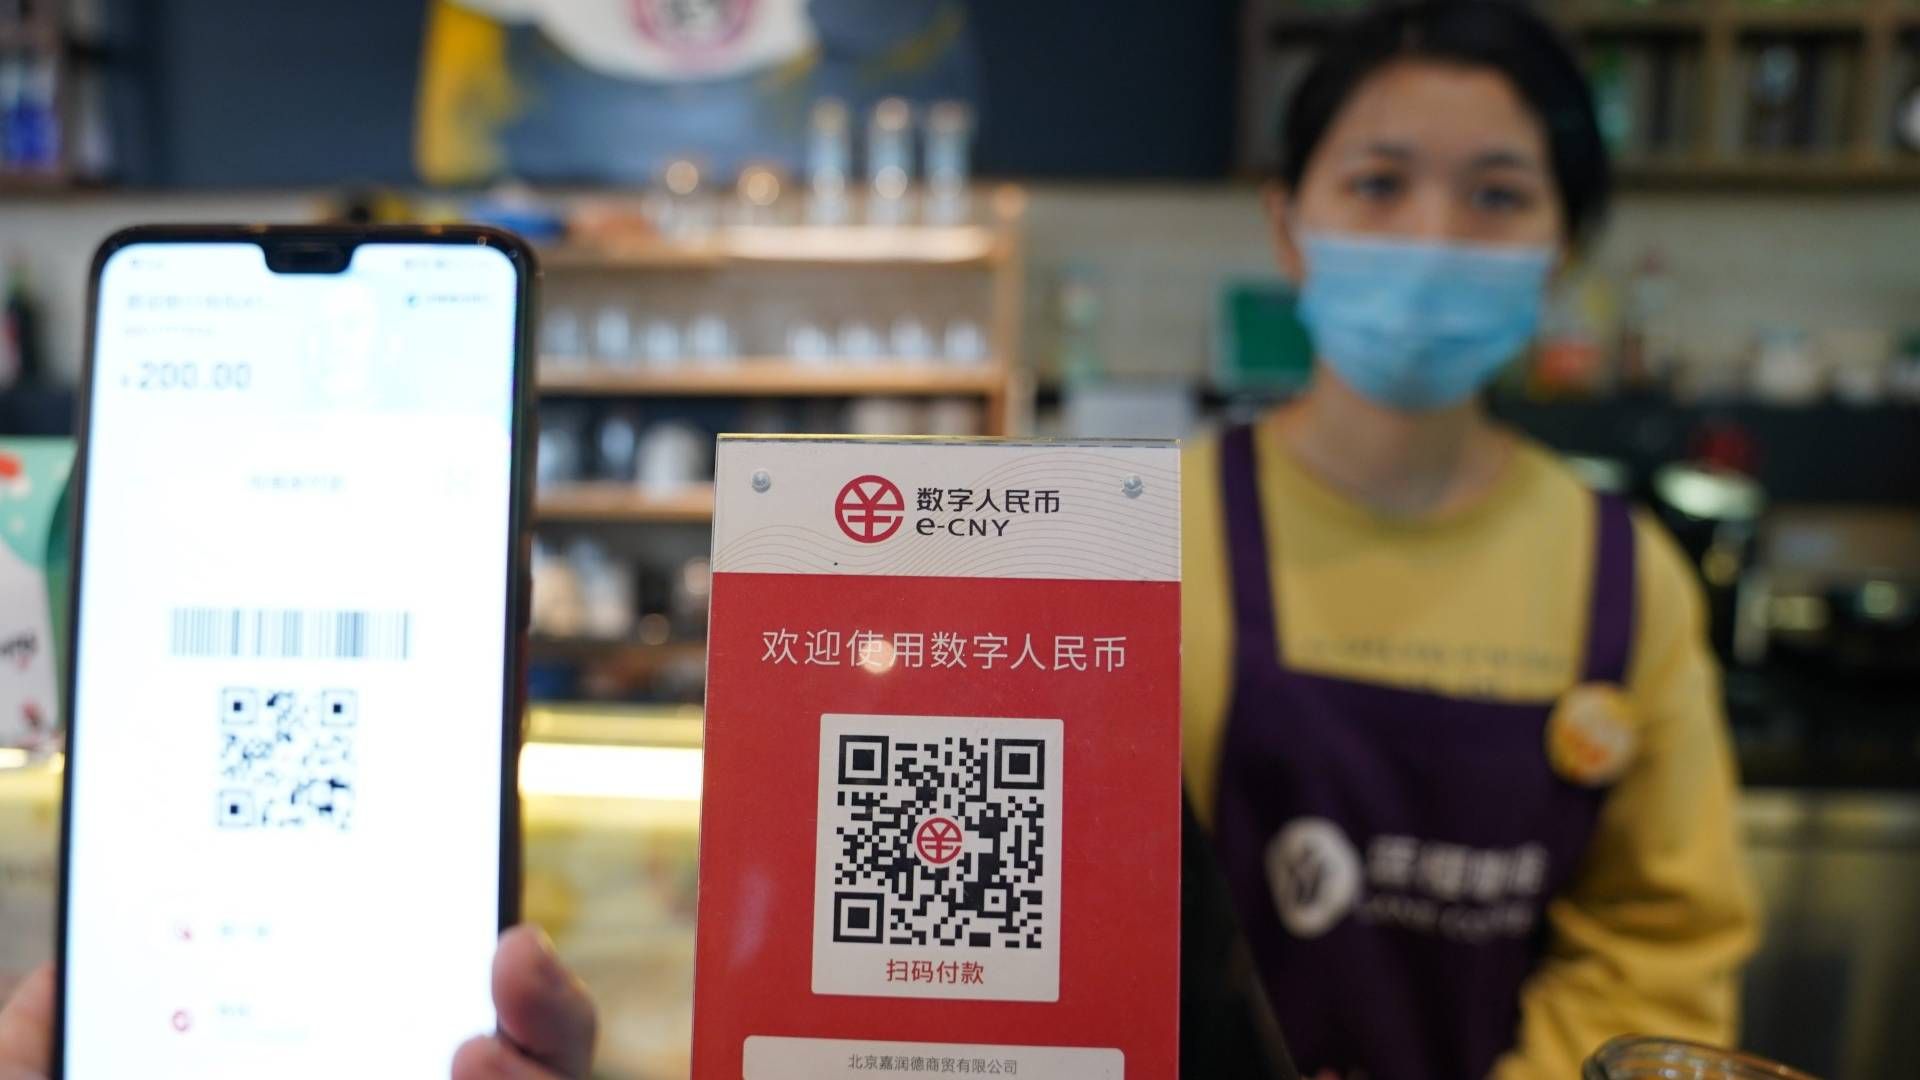 Beschilderung des von der Zentralbank unterstützten digitalen Yuan (E-CNY) ist in einem Café während eines Pilotlaufs des chinesischen DCEP-Projekts (Digital Currency Electronic Payment) in Beijing zu sehen | Foto: picture alliance/dpa/MAXPPP